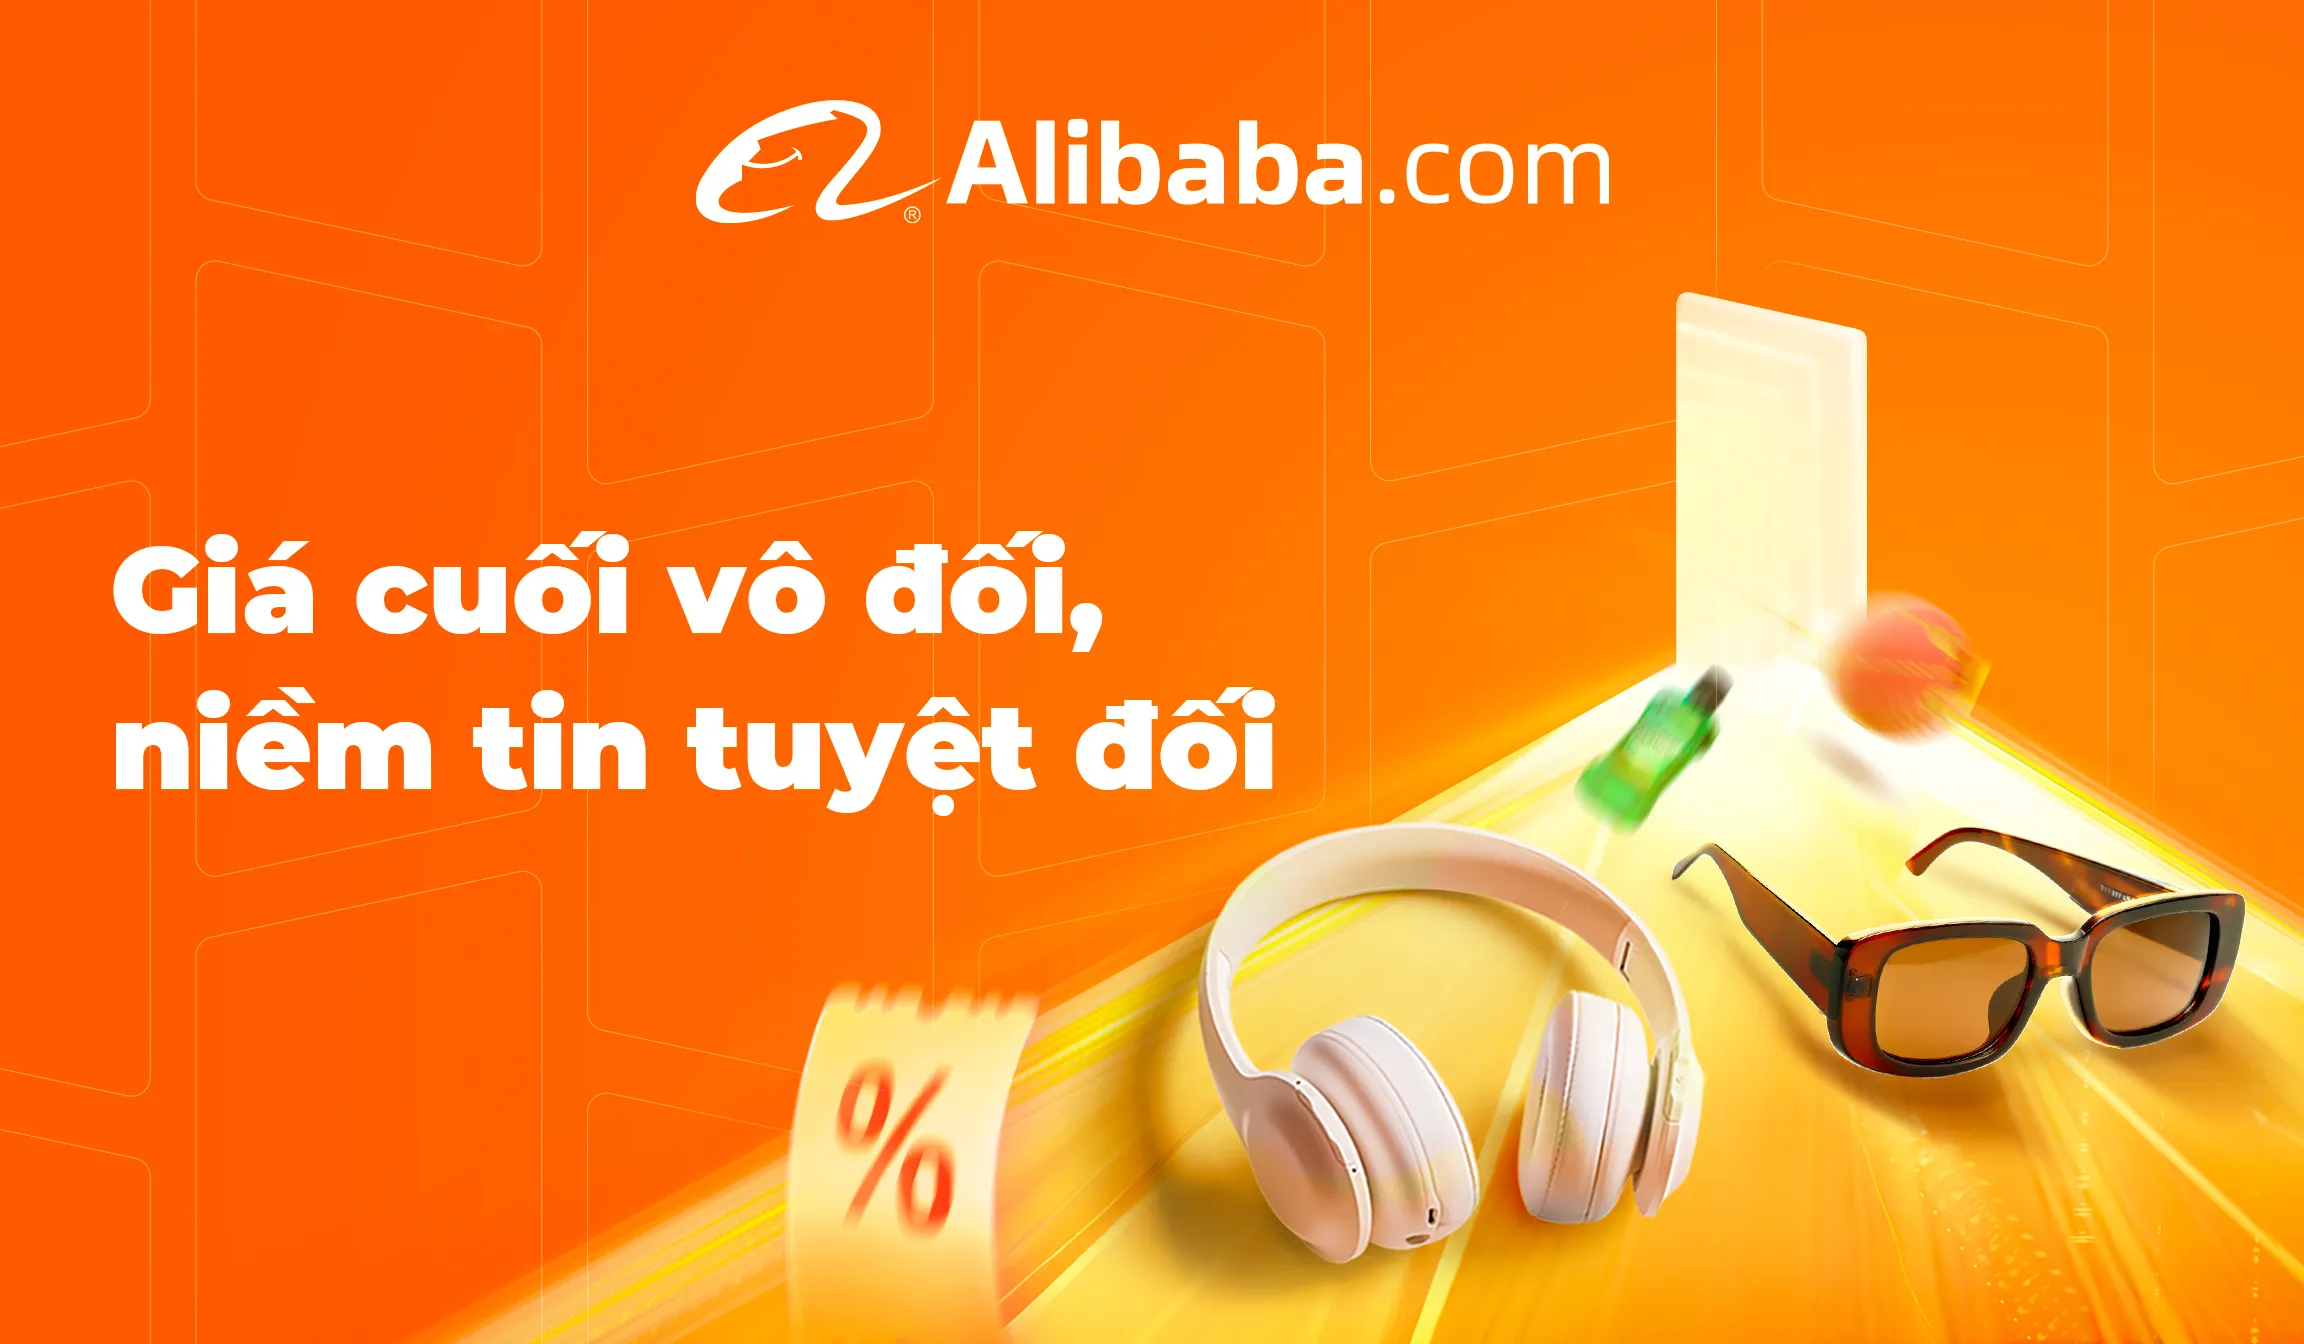 Alibaba.com ra mắt Lễ Hội Dự Trữ Hàng Tết Nguyên đán đầu tiên tại Đông Nam Á